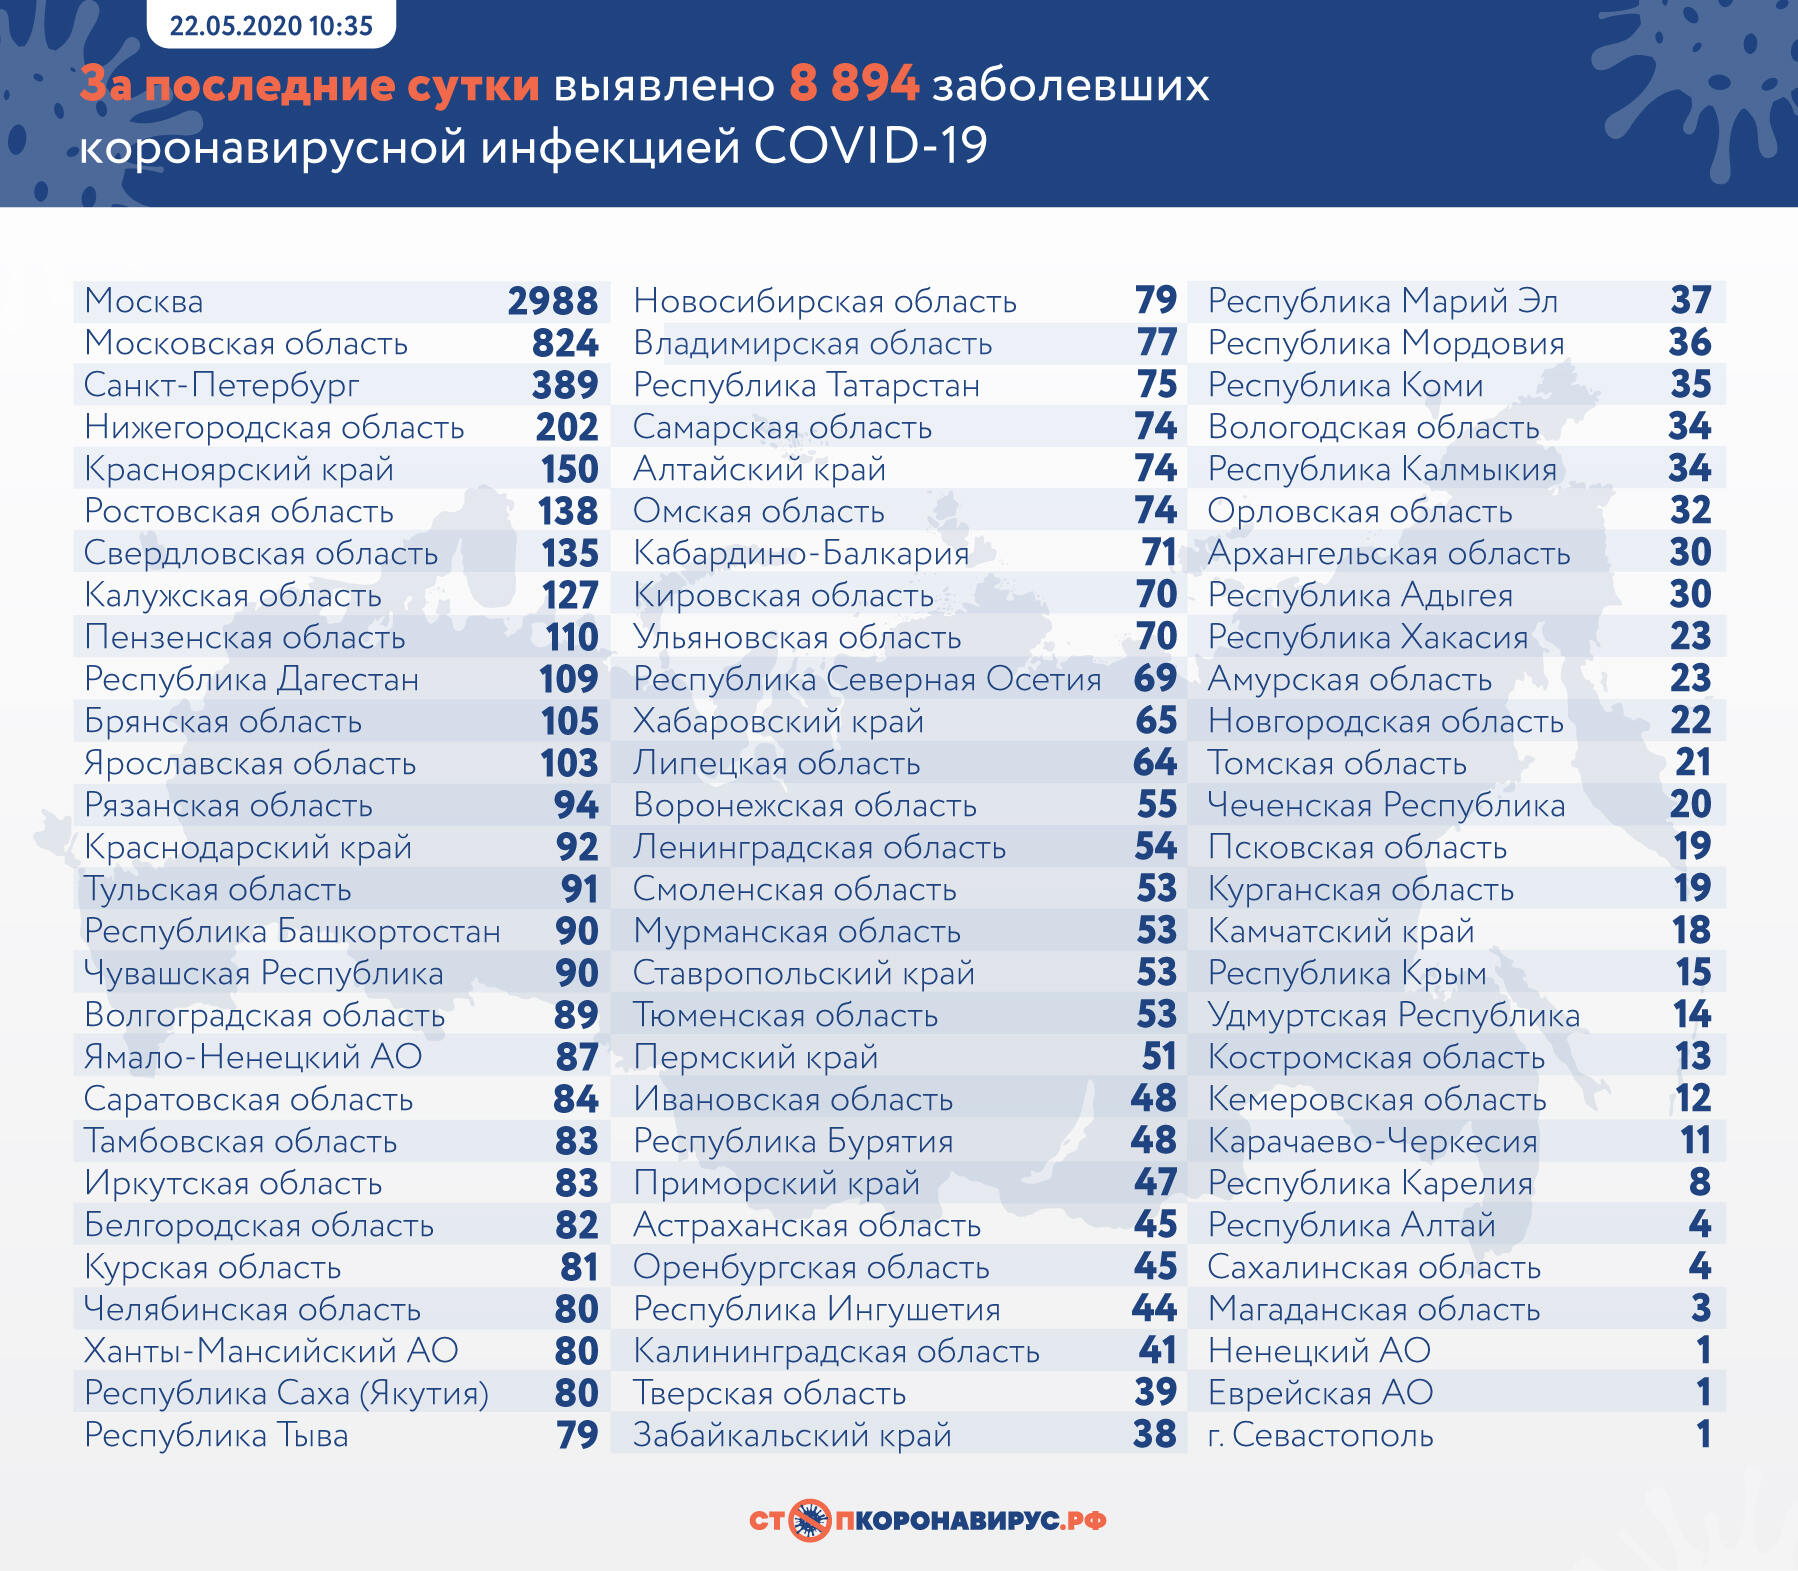 Брянская область сегодня не попала топ-10 по приросту коронавирусных больных